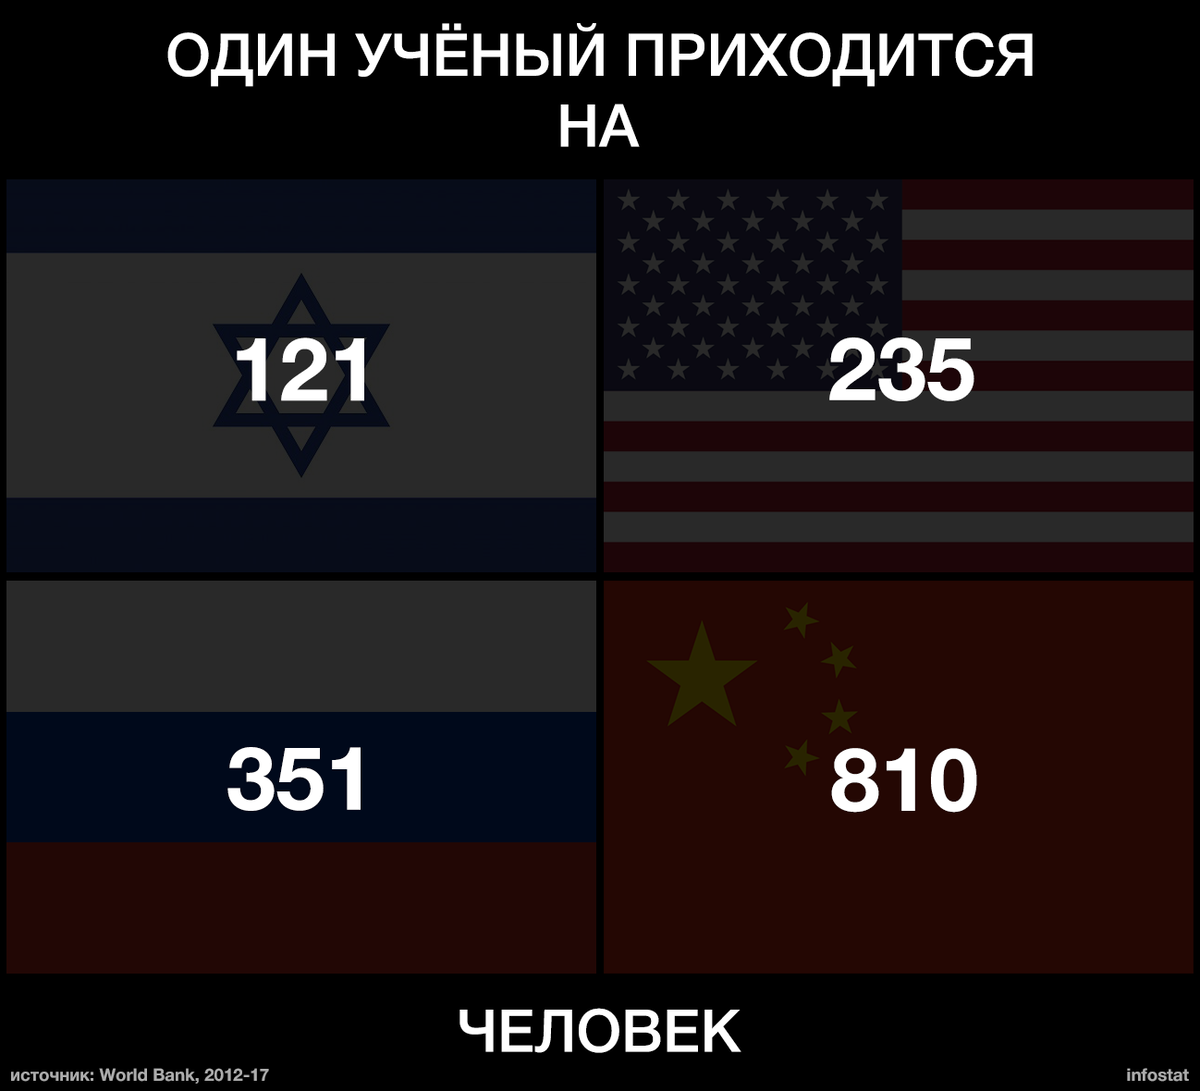 Количество ученых в странах. Количество учёных по странам. Количество ученых в России.